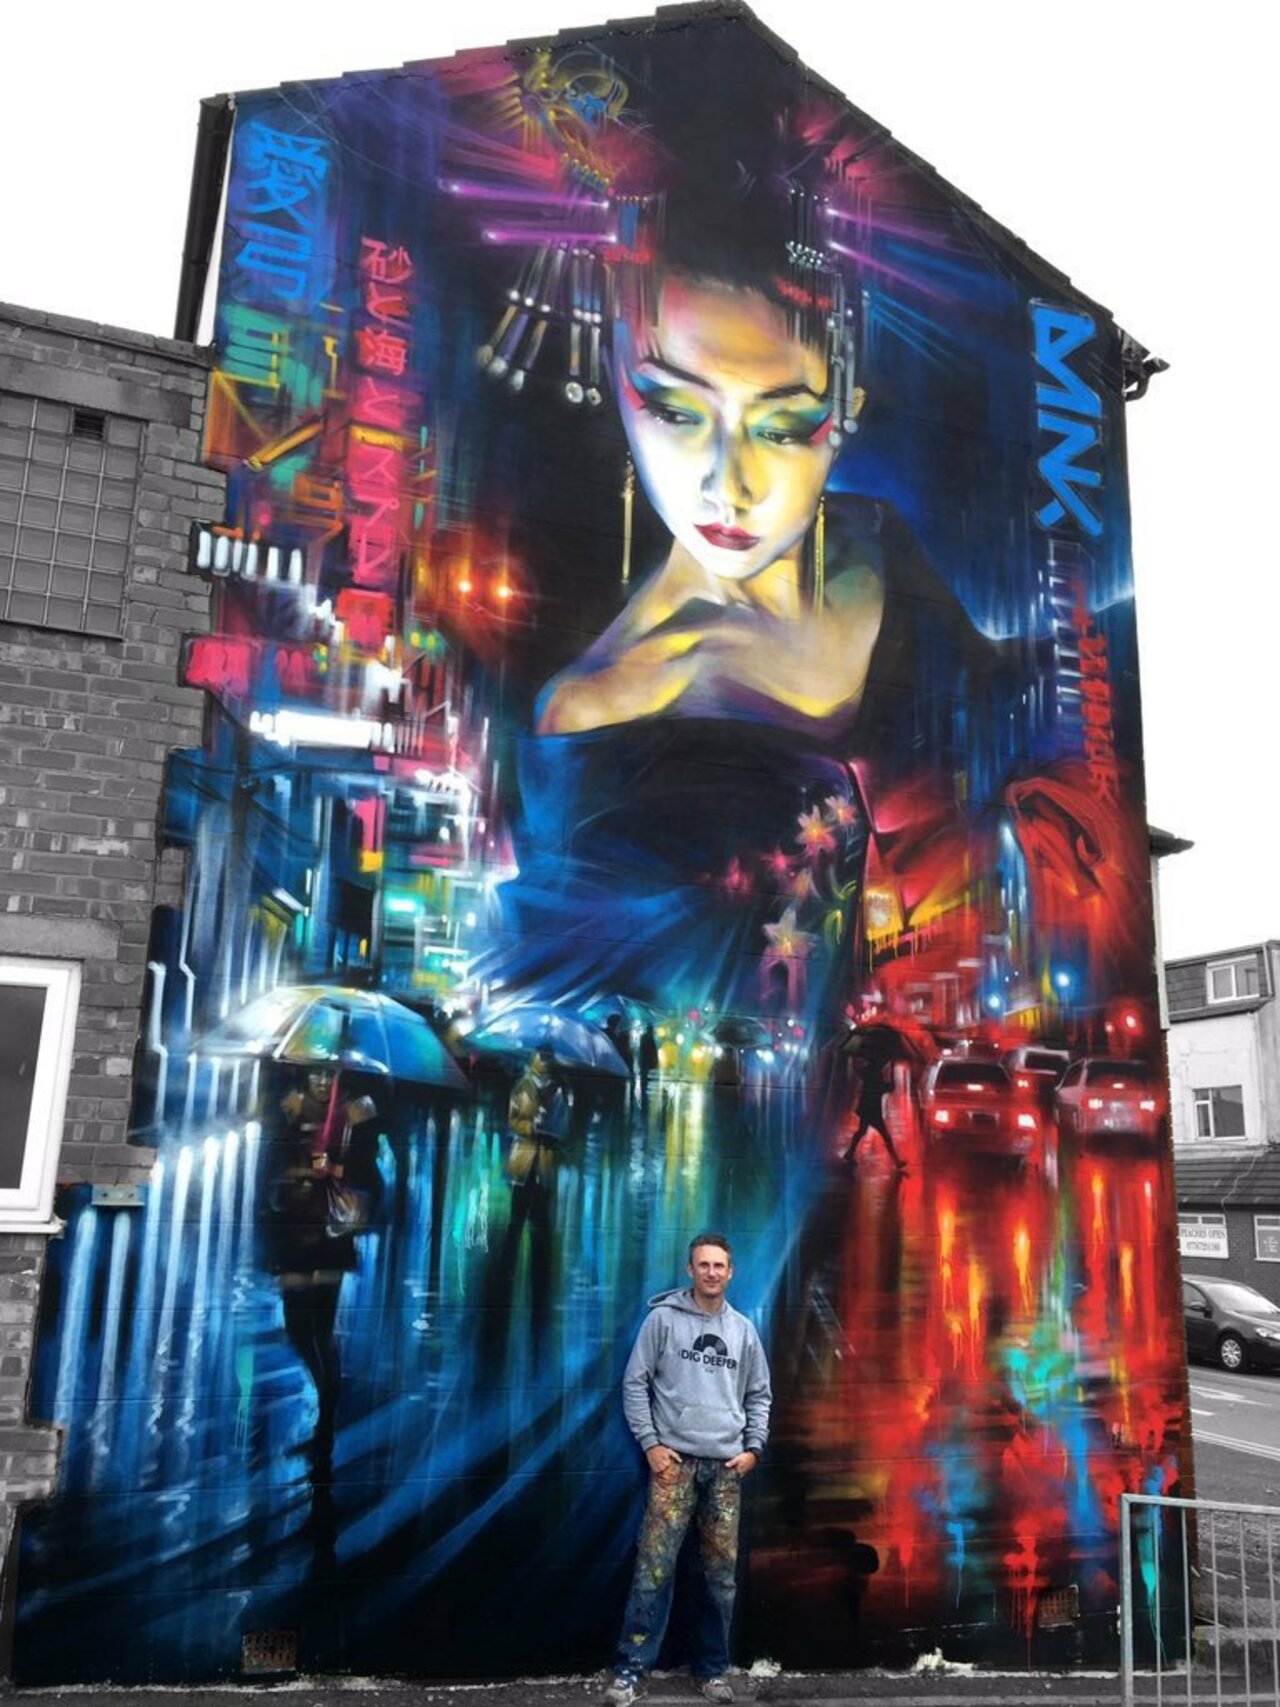 RT GoogleStreetArt: New Street Art by DanKitchener in Blackpool UK for the Sand Sea & Spray festival#art #mural … https://t.co/OKWwuUJ8ha